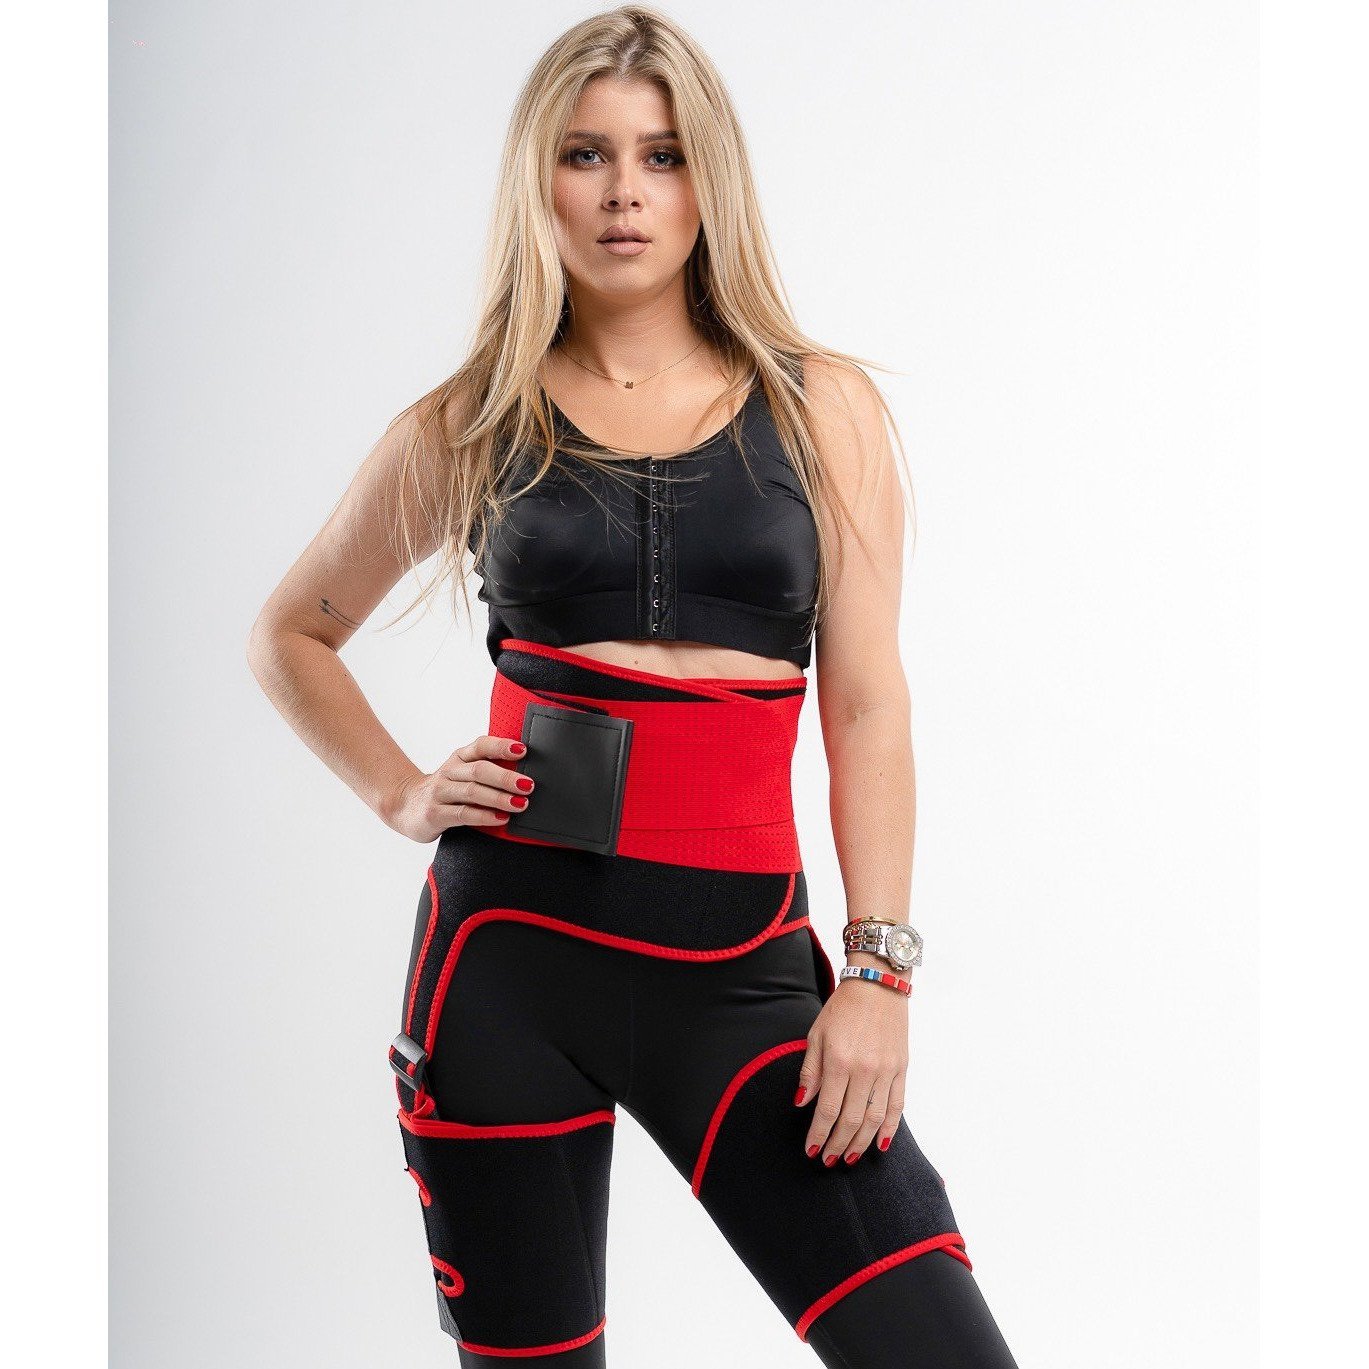 Bella Fit™ Sacha - waist trainer XL / Zwart